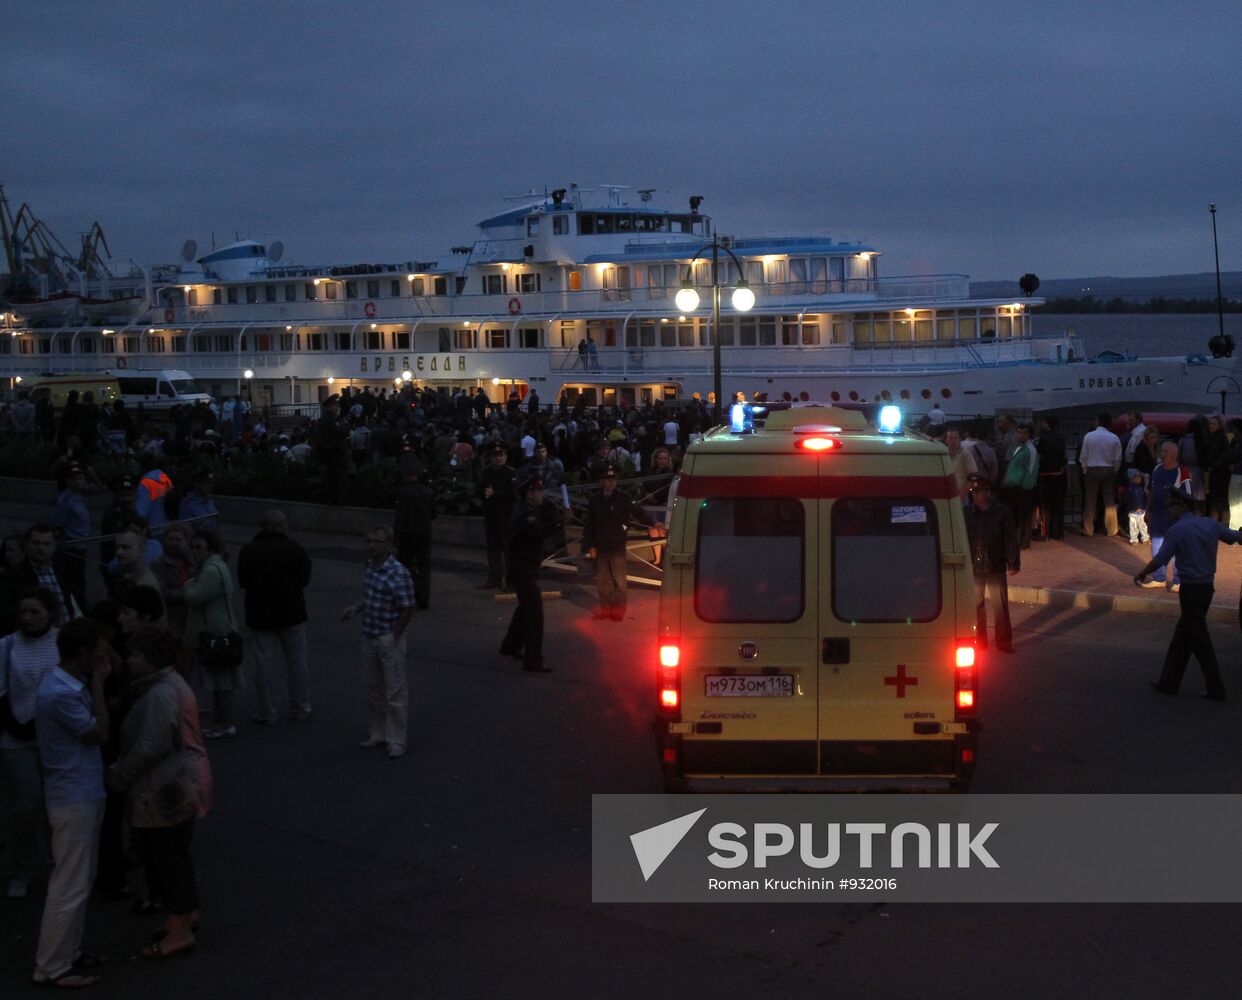 "Arabella" ship brings 76 injured to the port of Kazan